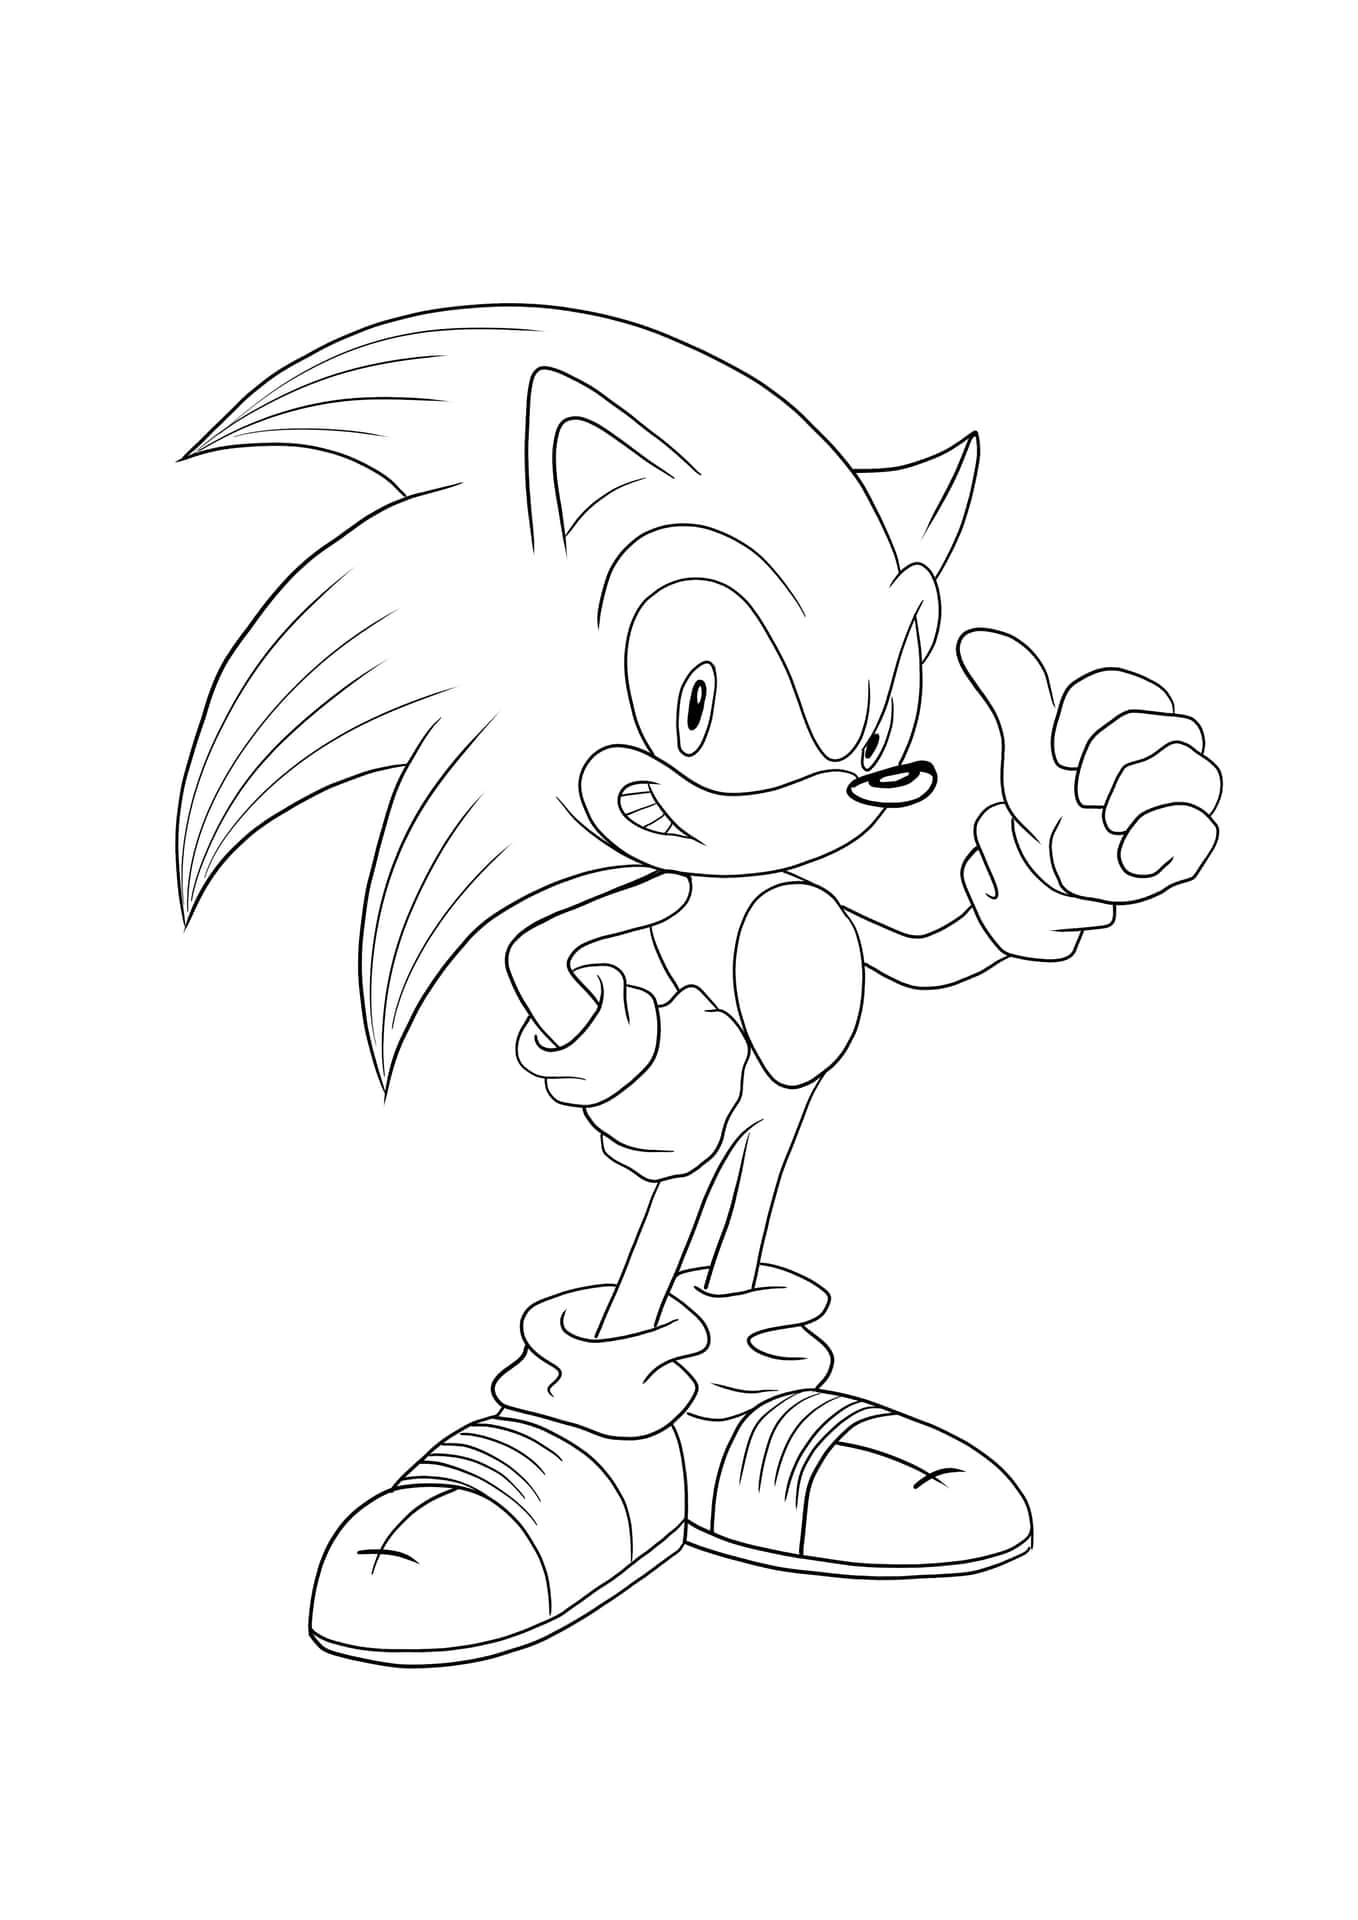 Dibujopara Colorear De Sonic Con Imagen De Sonic Haciendo Pulgar Arriba.